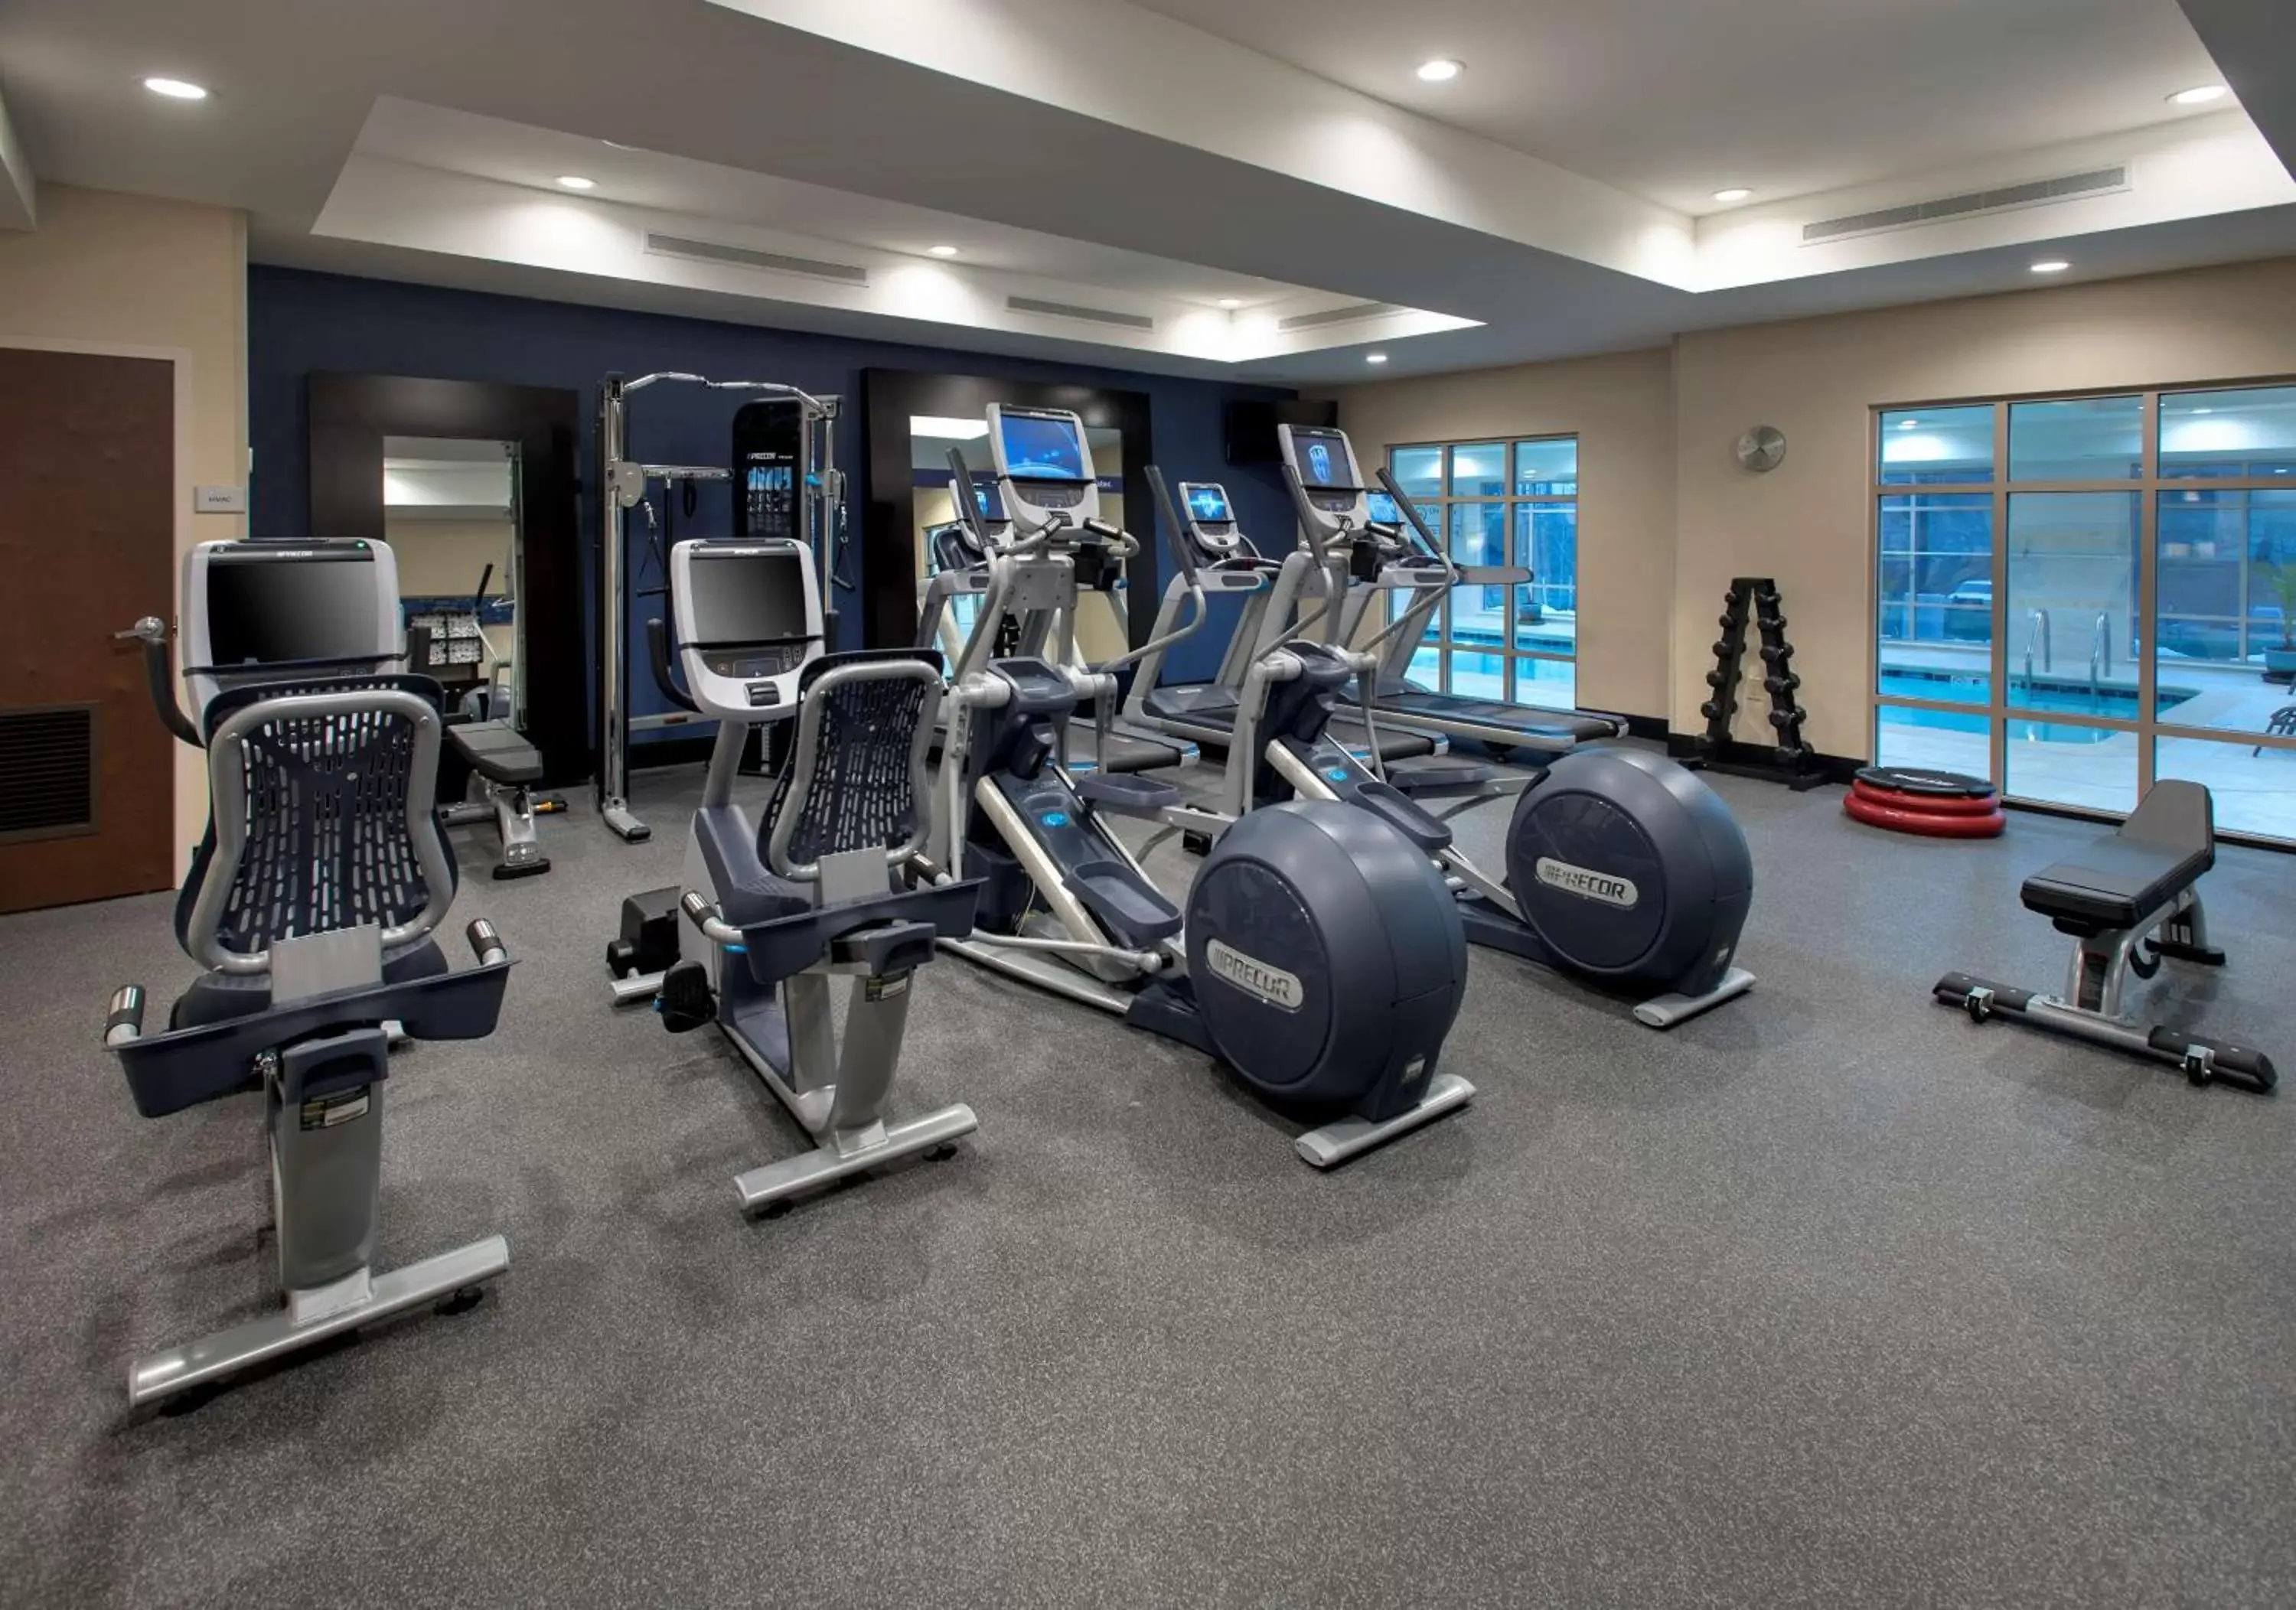 Fitness centre/facilities, Fitness Center/Facilities in Hampton Inn by Hilton New Paltz, NY